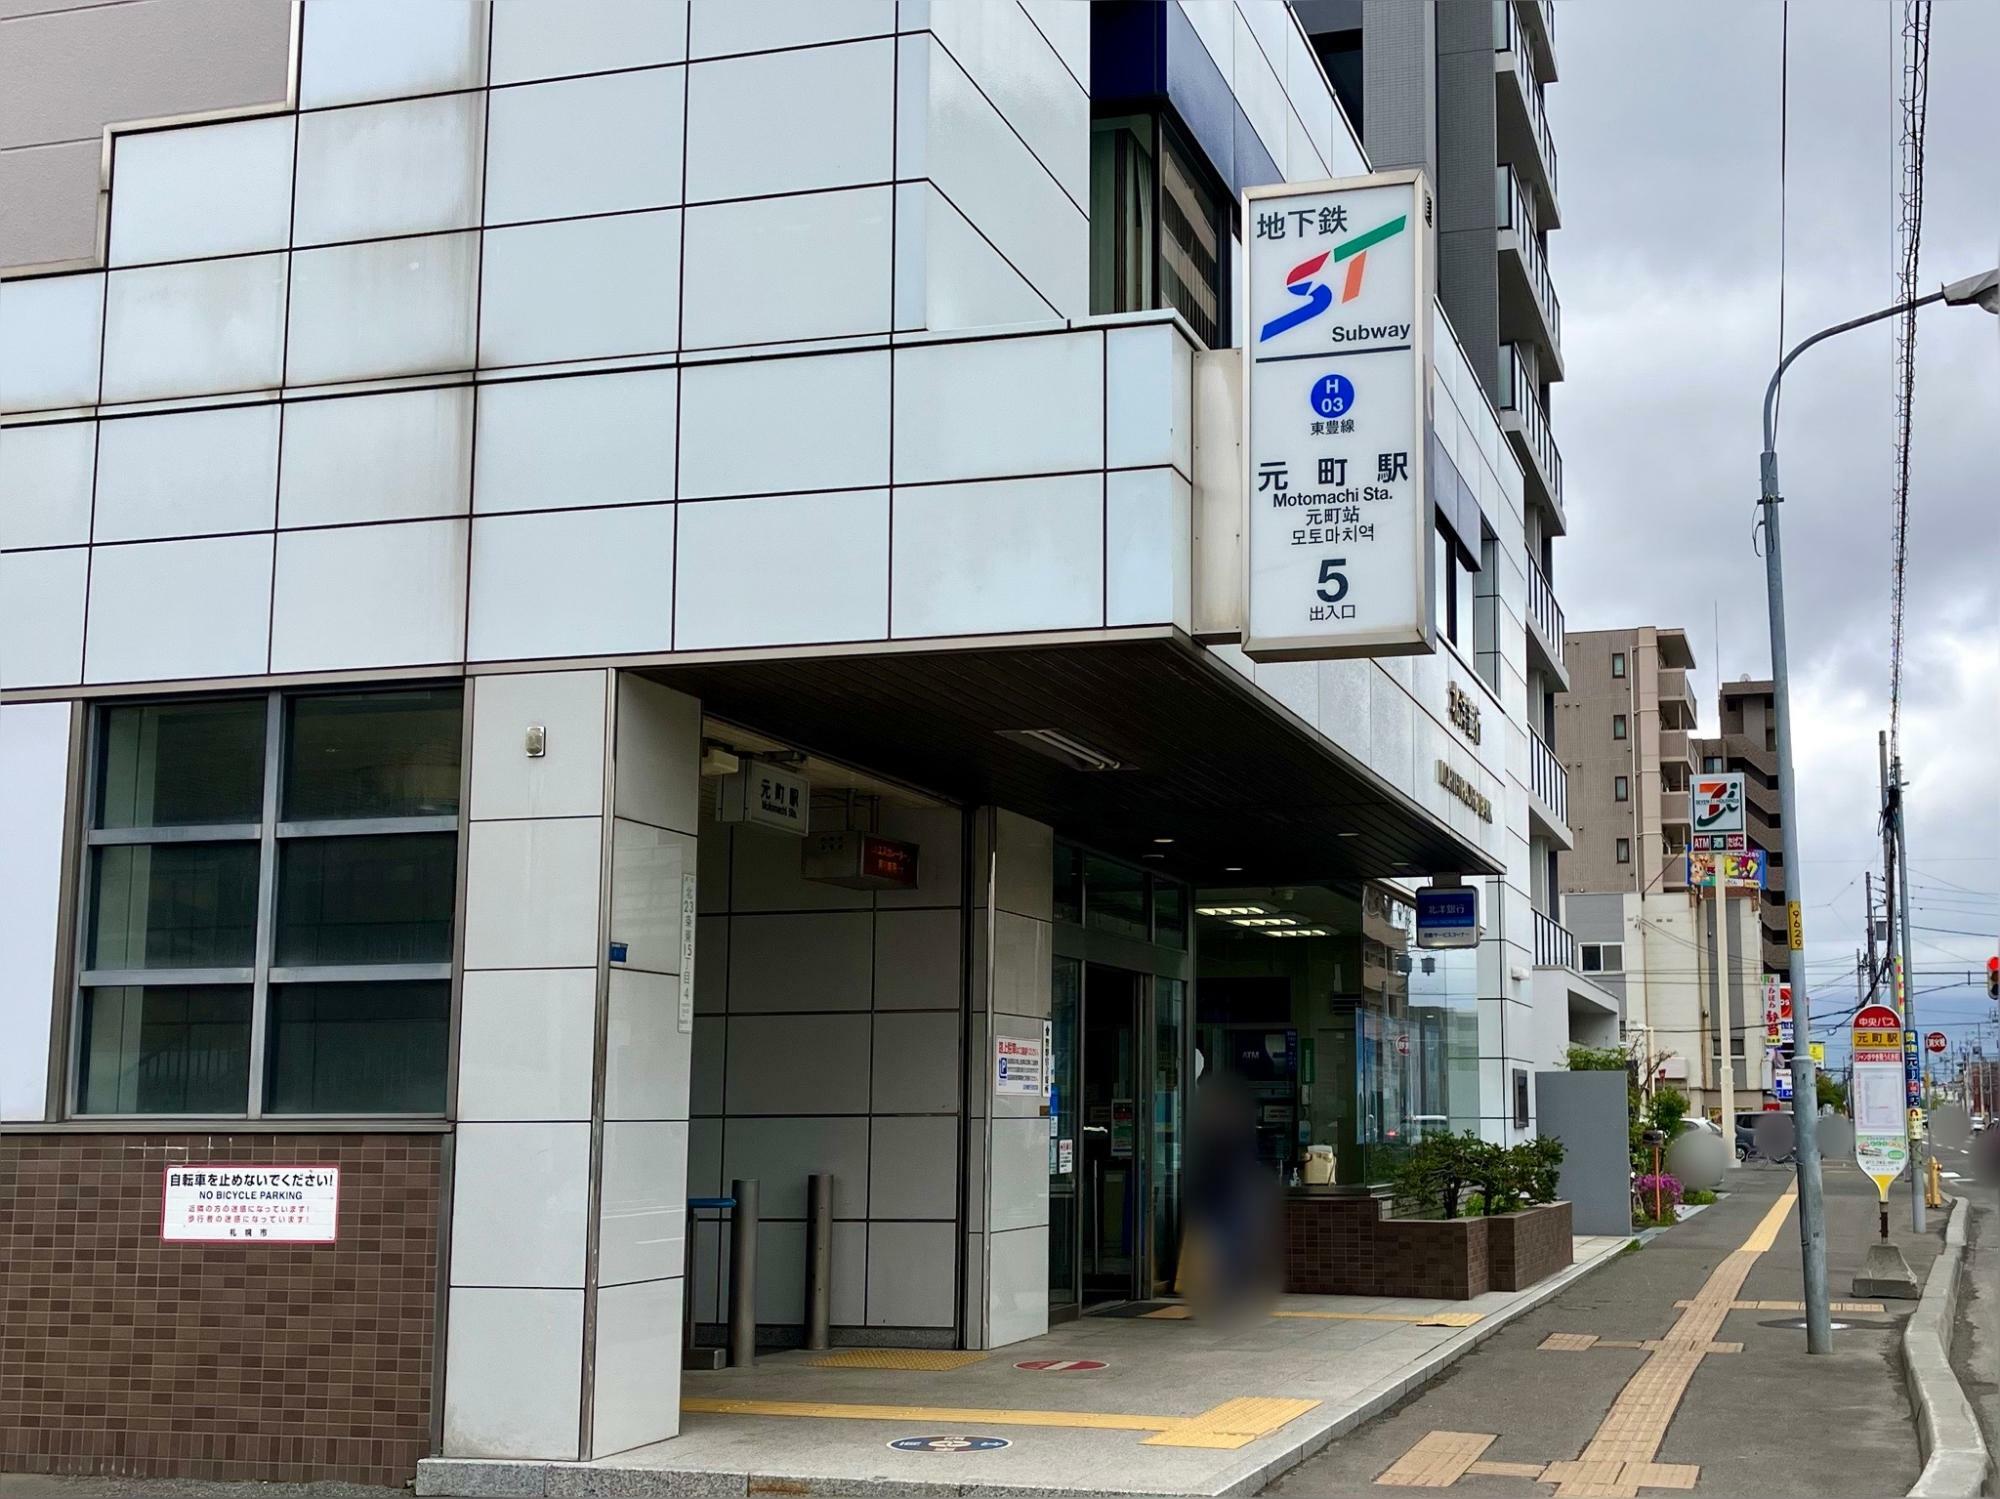 札幌地下鉄東豊線「元町」駅 5番出入口